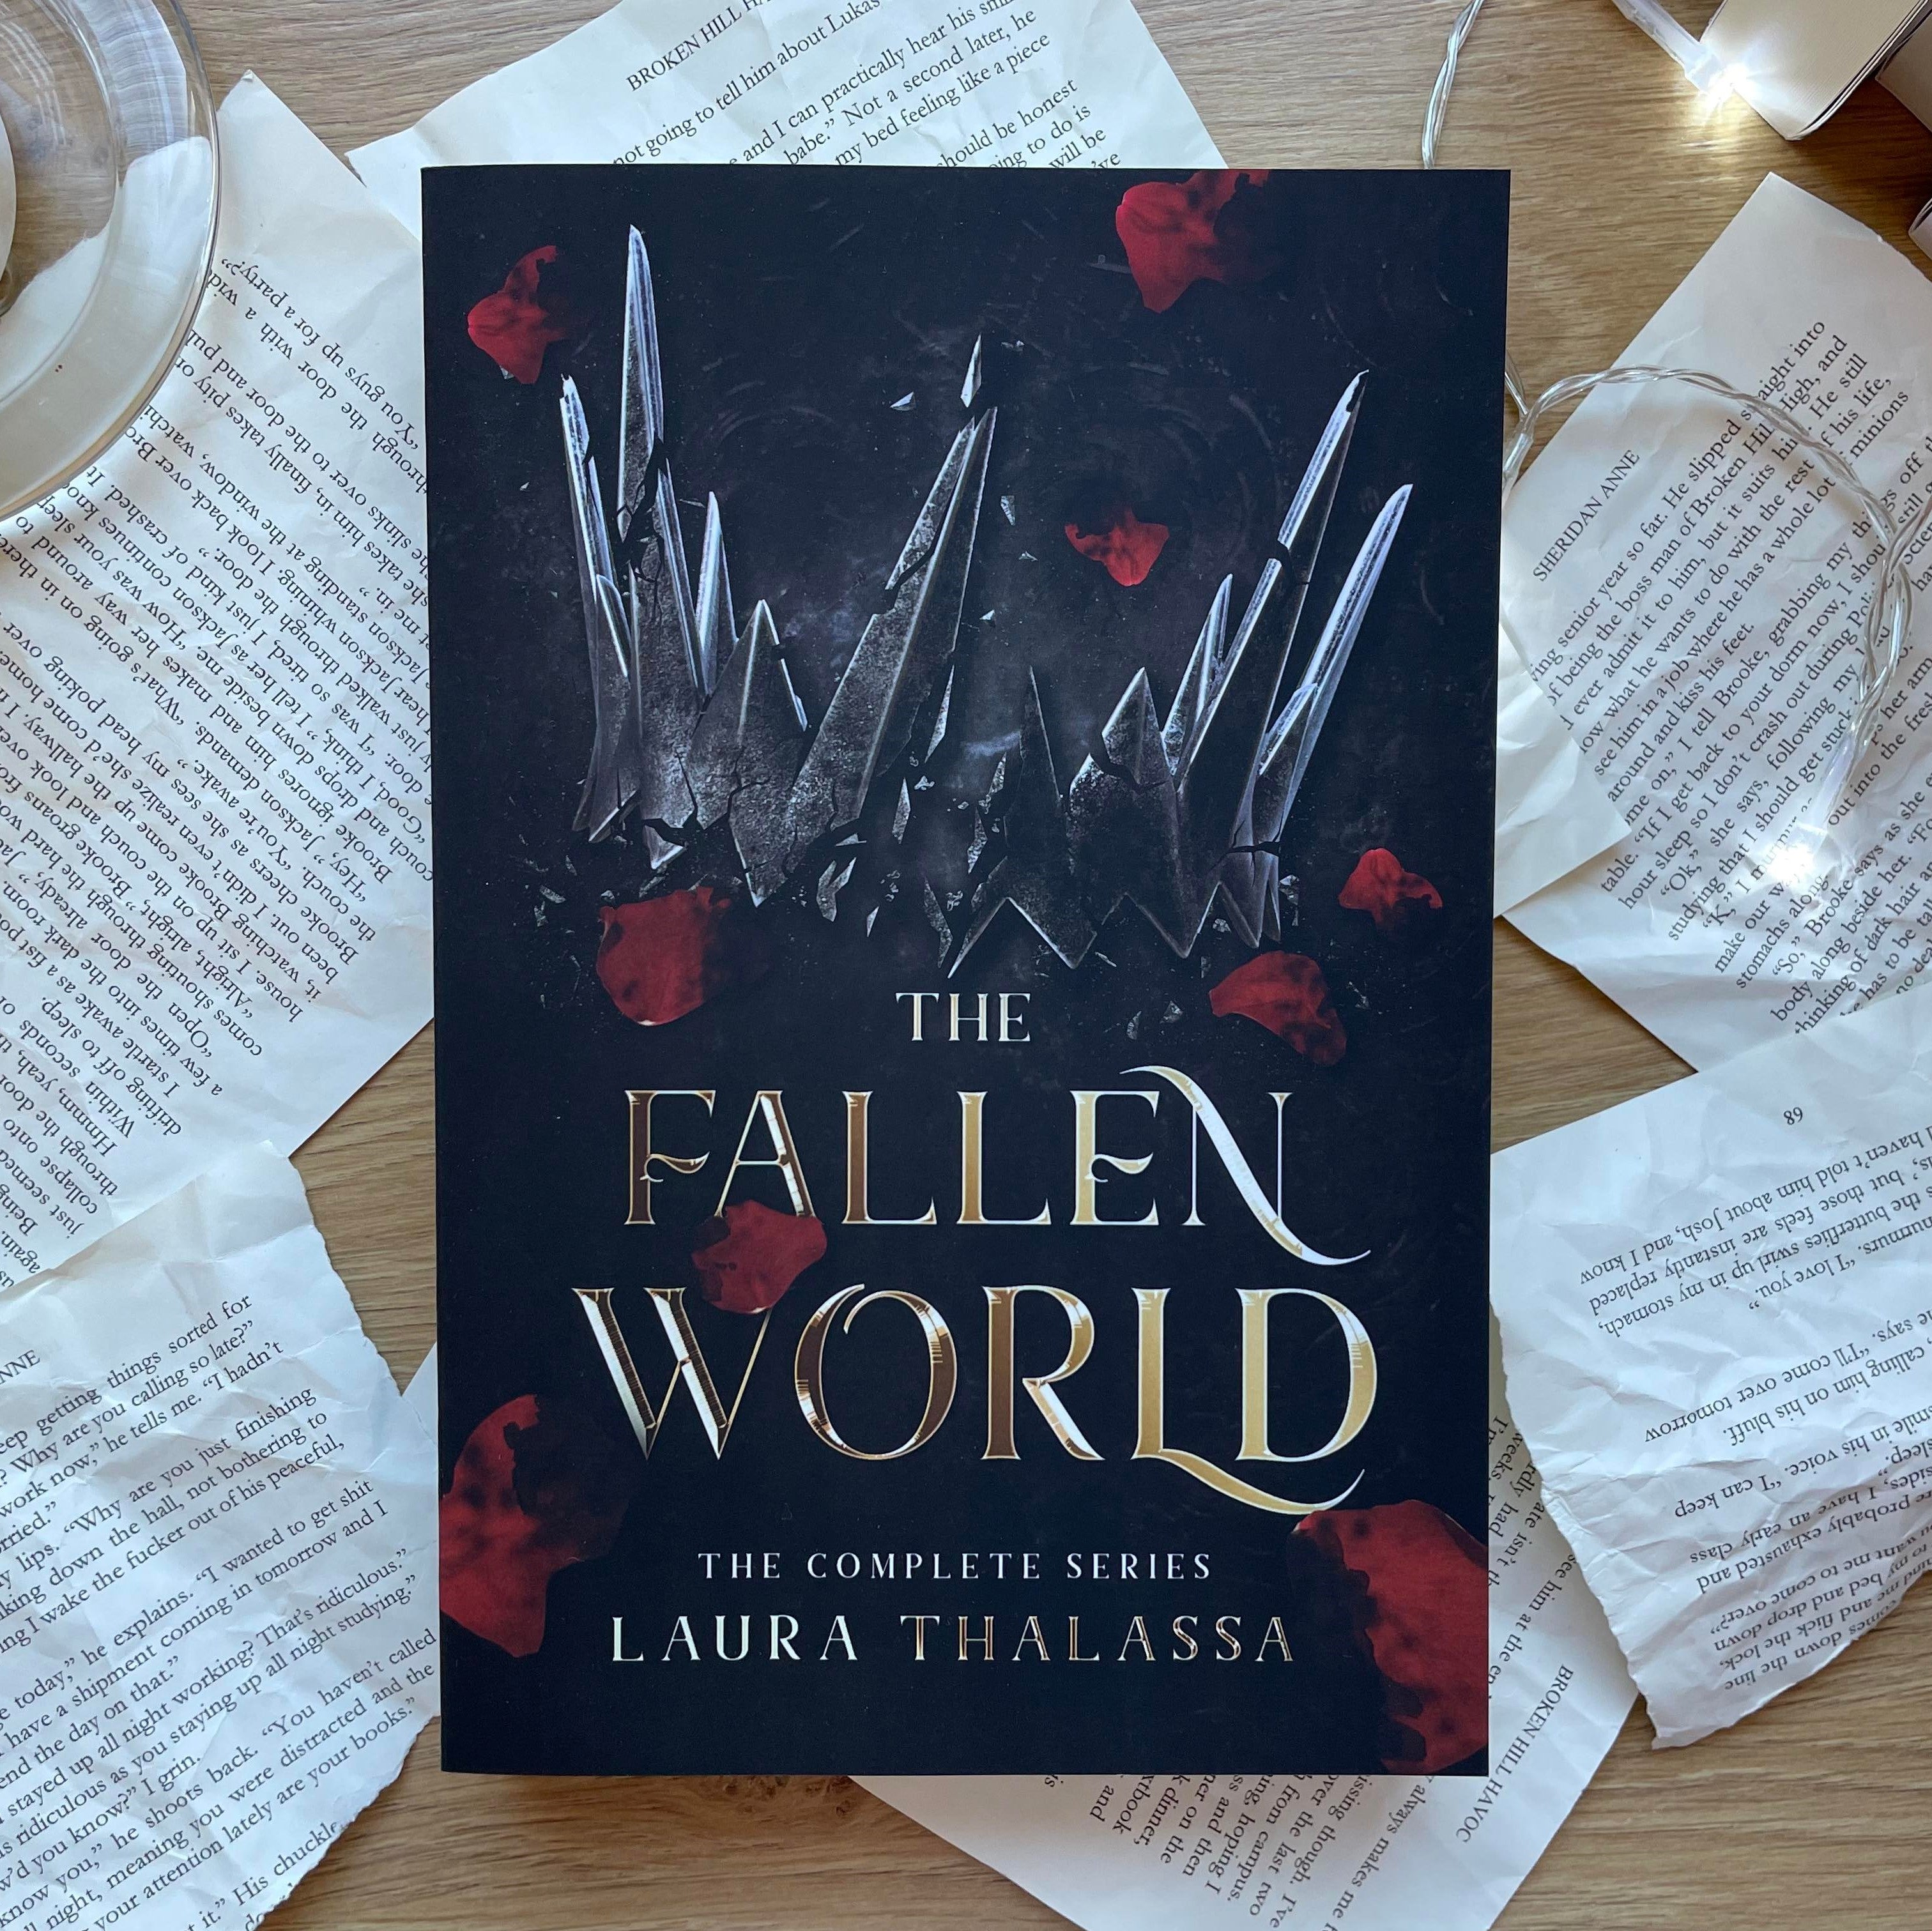 The Fallen World by Laura Thalassa